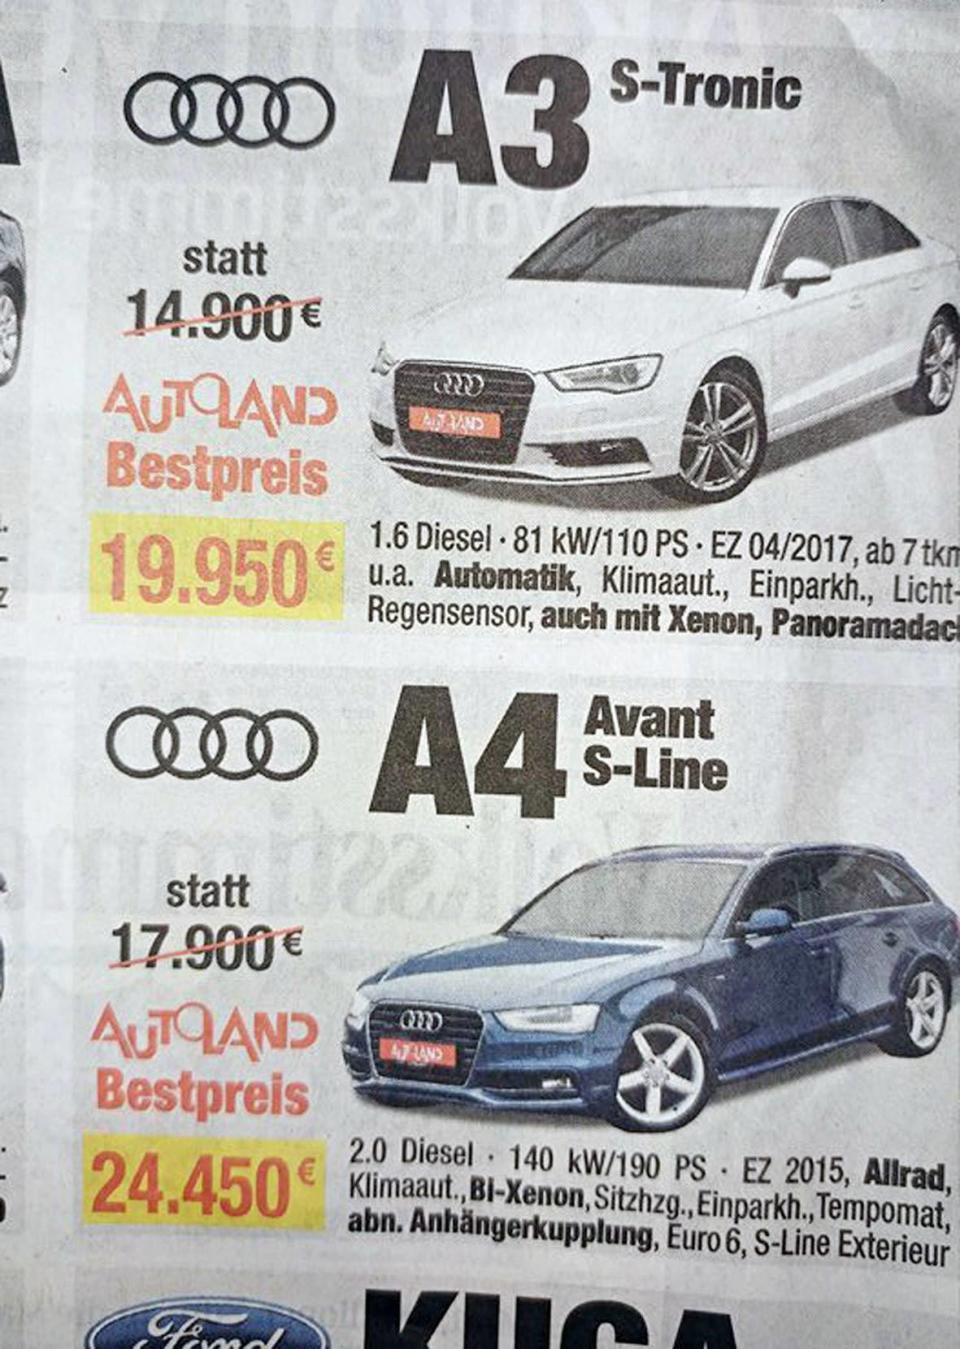 <p>Günstiger ist nicht immer besser – das müssen sich zumindest die Betreiber dieses Autohauses gedacht haben. Sonst kann man sich kaum erklären, warum ein Audi A3 statt für 14.900 Euro nun zum „Bestpreis“ von 19.950 Euro verkauft wird. Und auch beim Audi A4 liegt der Bestpreis anscheinend knapp 7000 Euro über dem Originalpreis. Aber bei so einer großen Anschaffung will man ja wirklich nicht am falschen Ende sparen.<br> (Bild: Facebook/@Kurioses aus der Presseschau) </p>